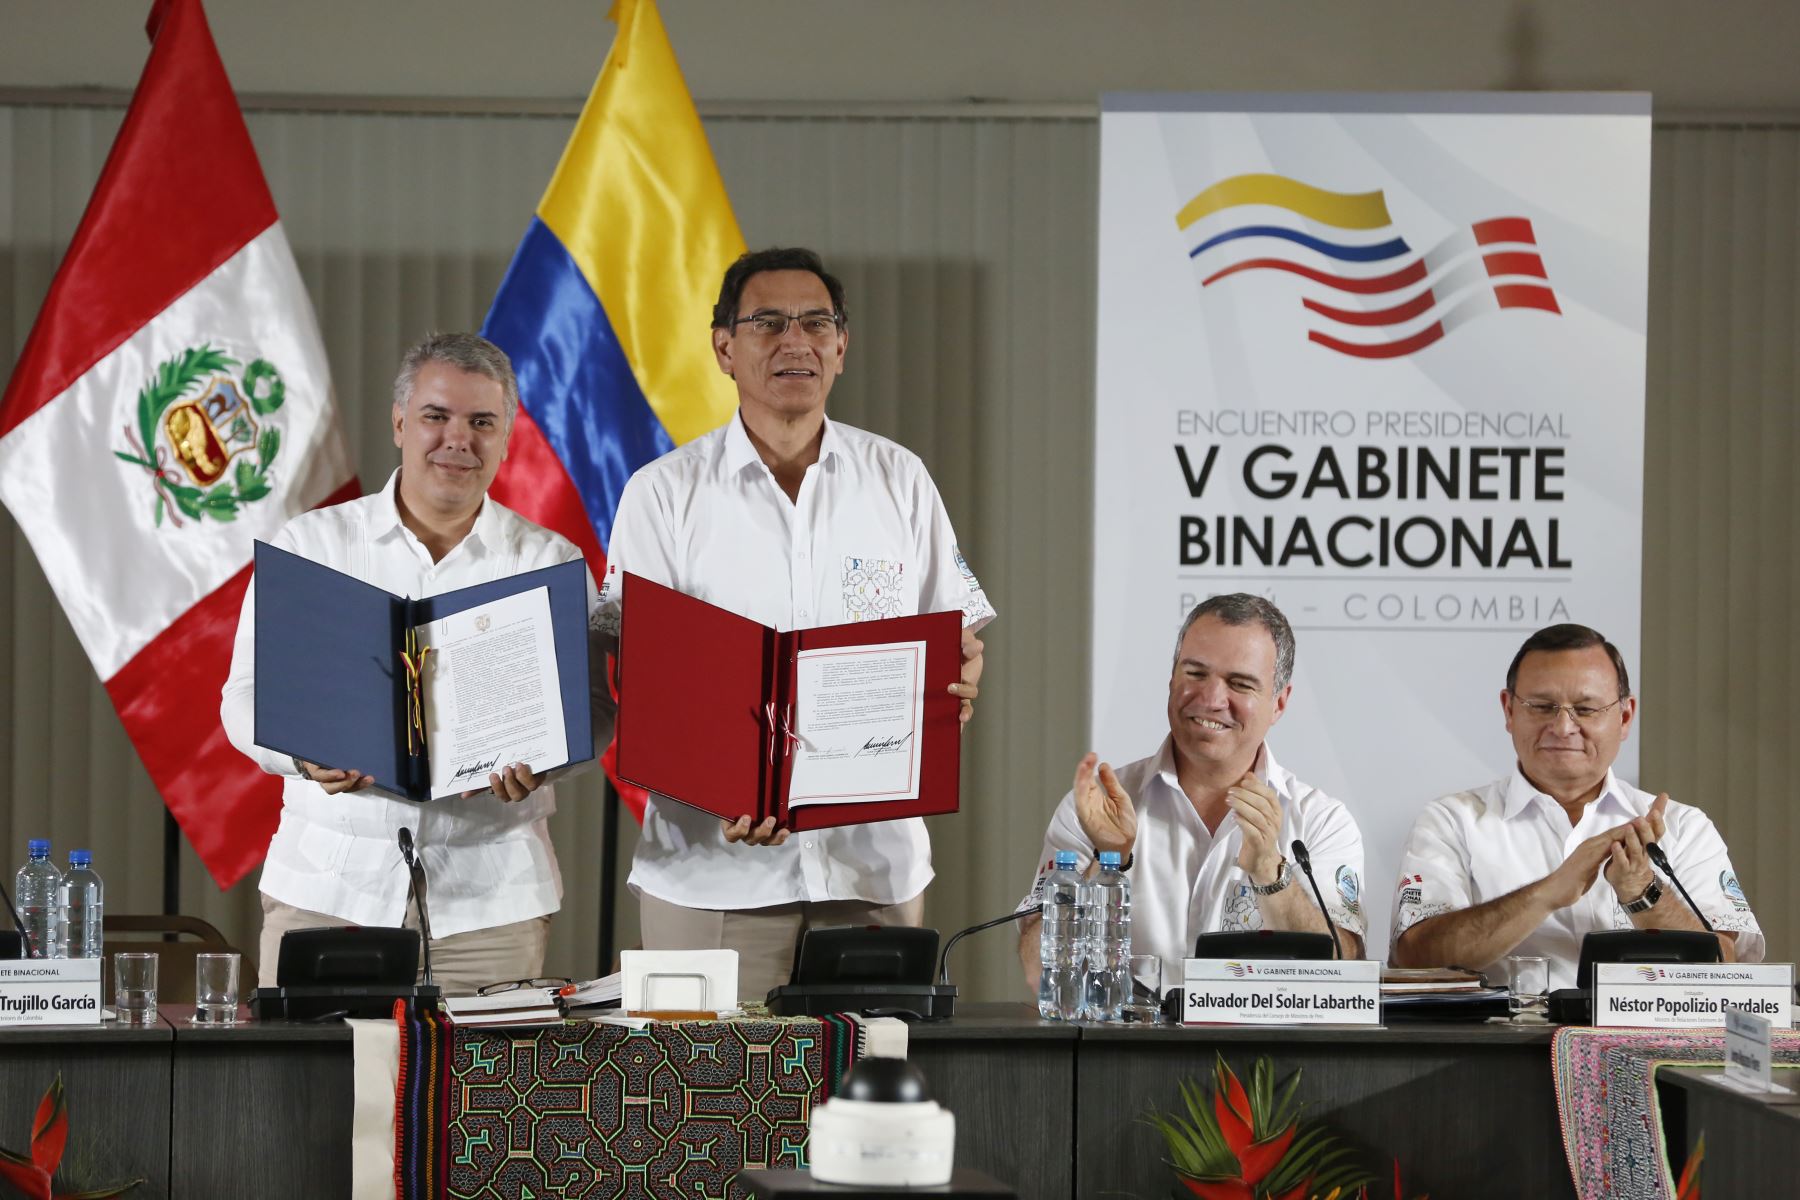 Los jefes del Estado del Perú, Martín Vizcarra y de Colombia, Iván Duque, firmaron la Declaración Presidencial Conjunta del Encuentro Presidencial y V Gabinete Binacional.